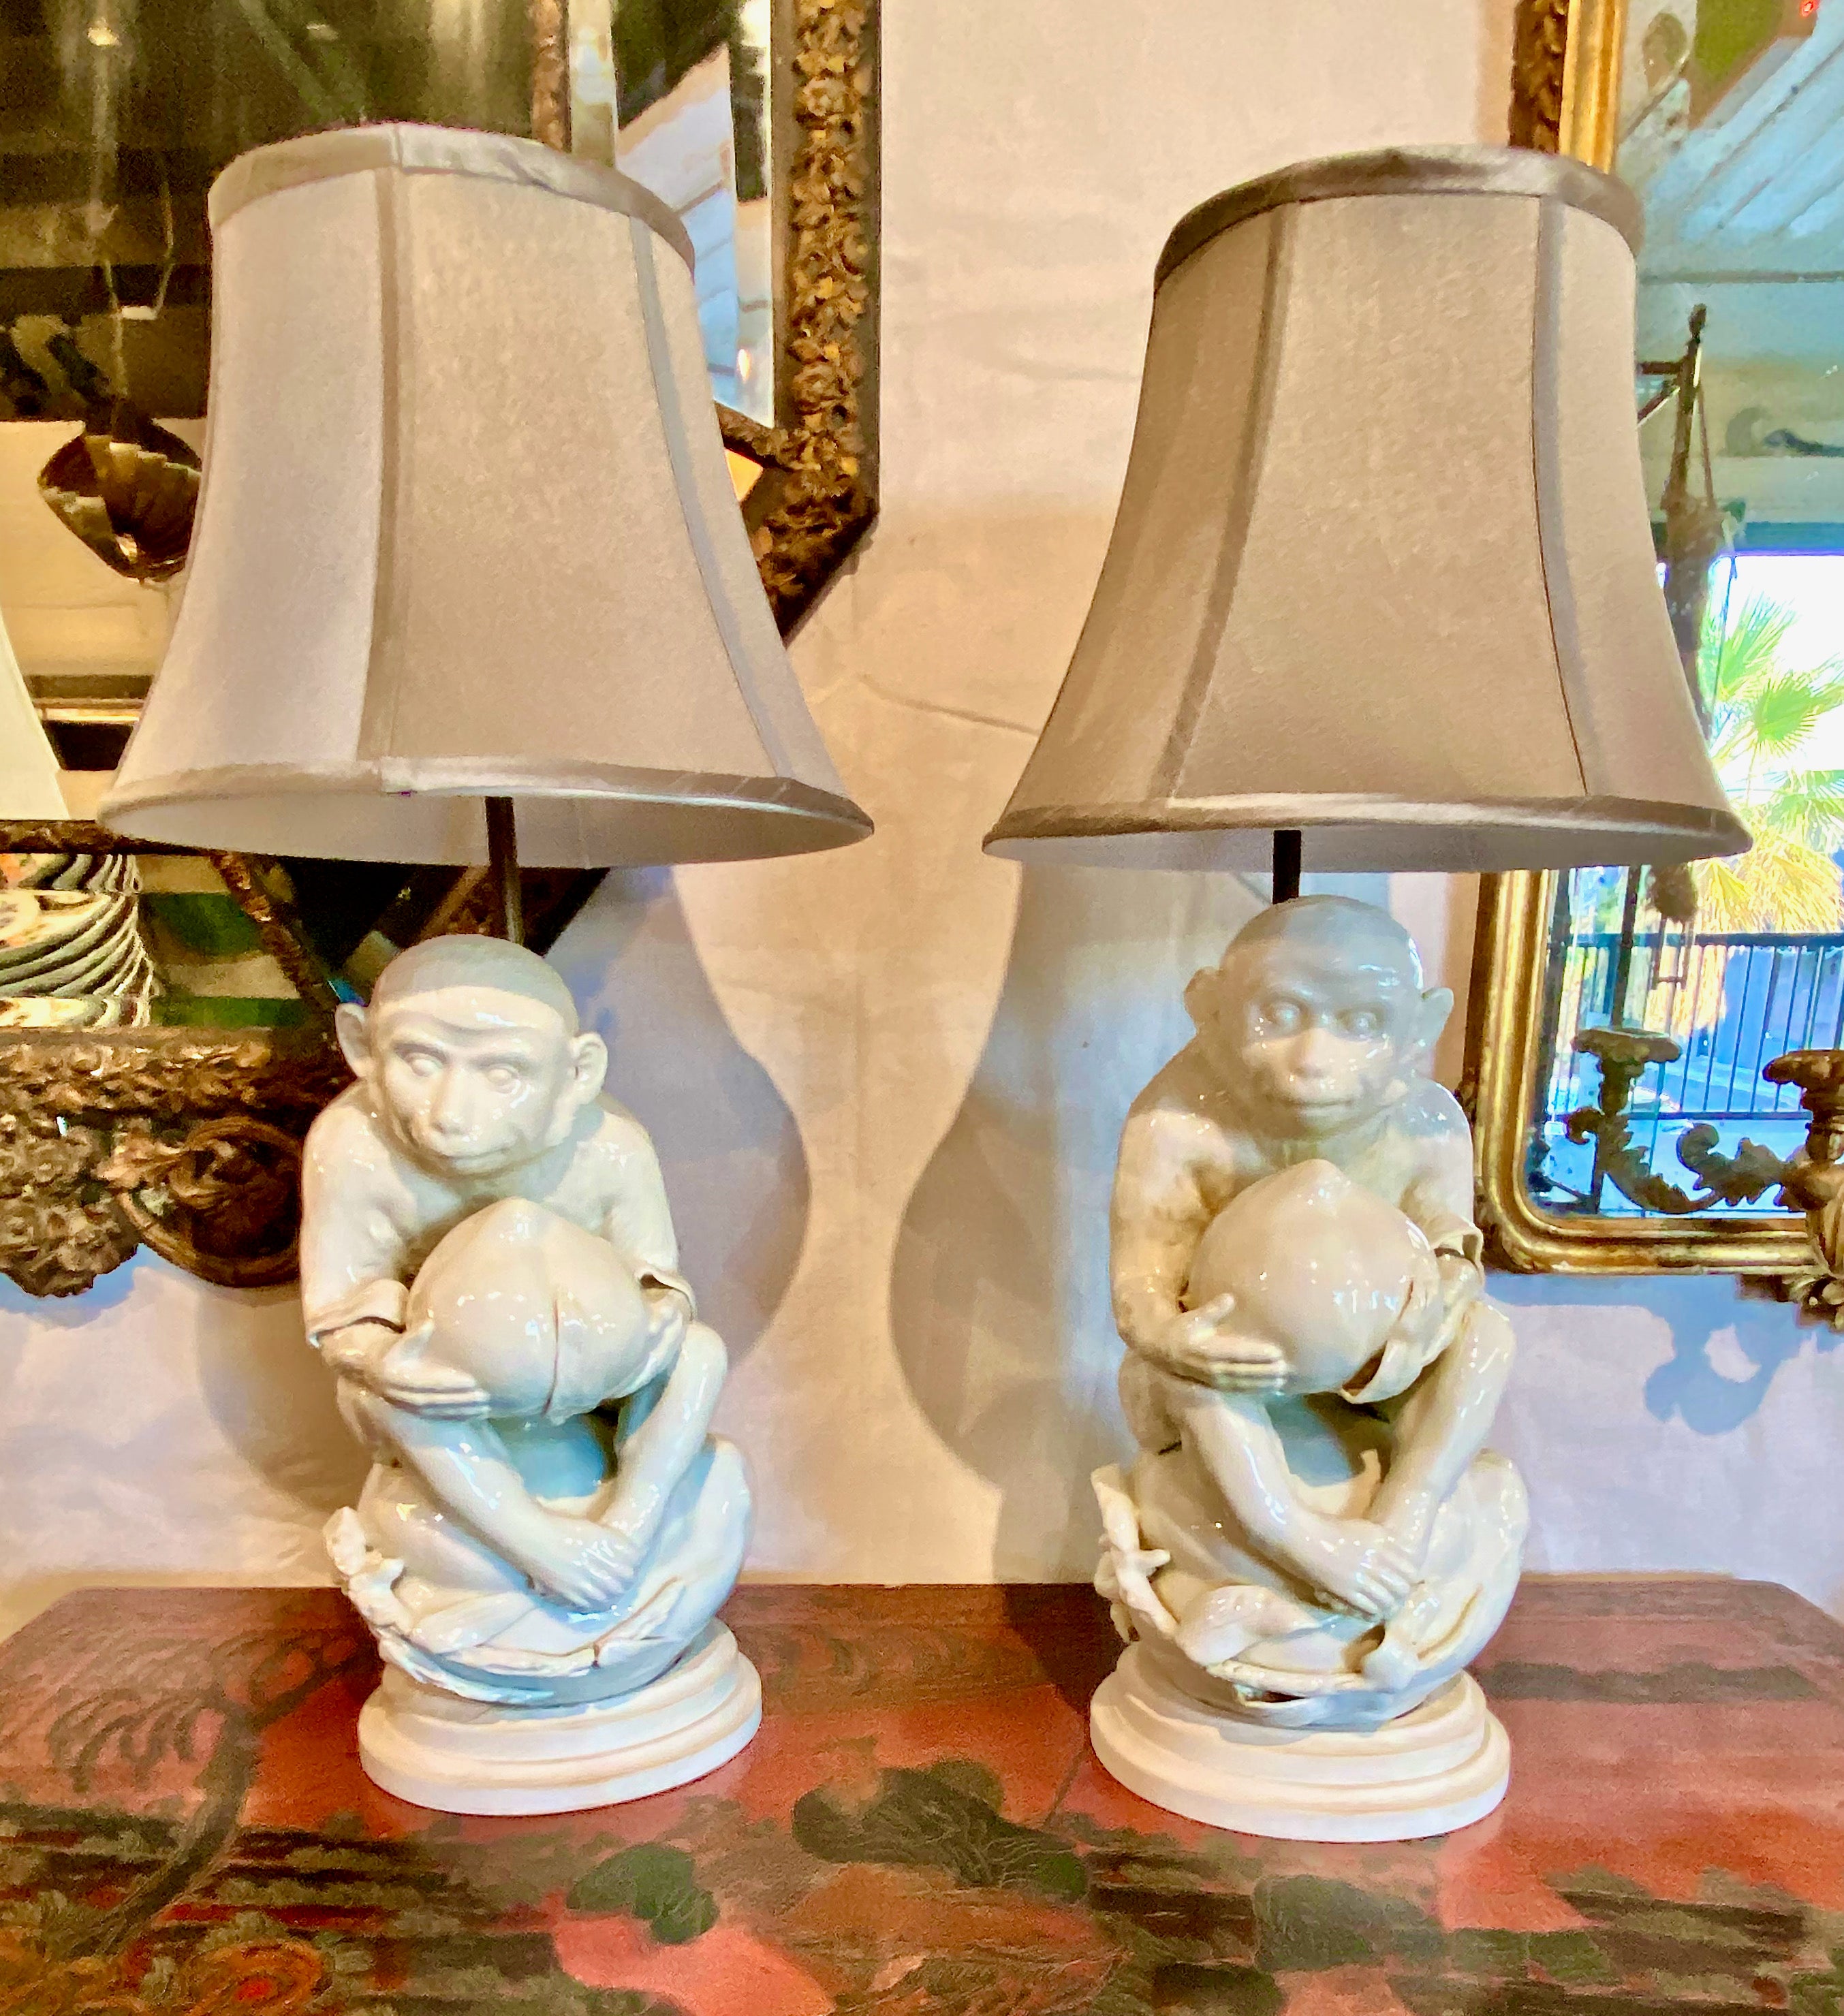 Il s'agit d'une paire de lampes uniques de style côtier blanc de chine datant du milieu du siècle. Je pense que les sculptures de singe sont en porcelaine allemande et datent de la fin du 19ème ou du début du 20ème siècle car il y a un numéro au